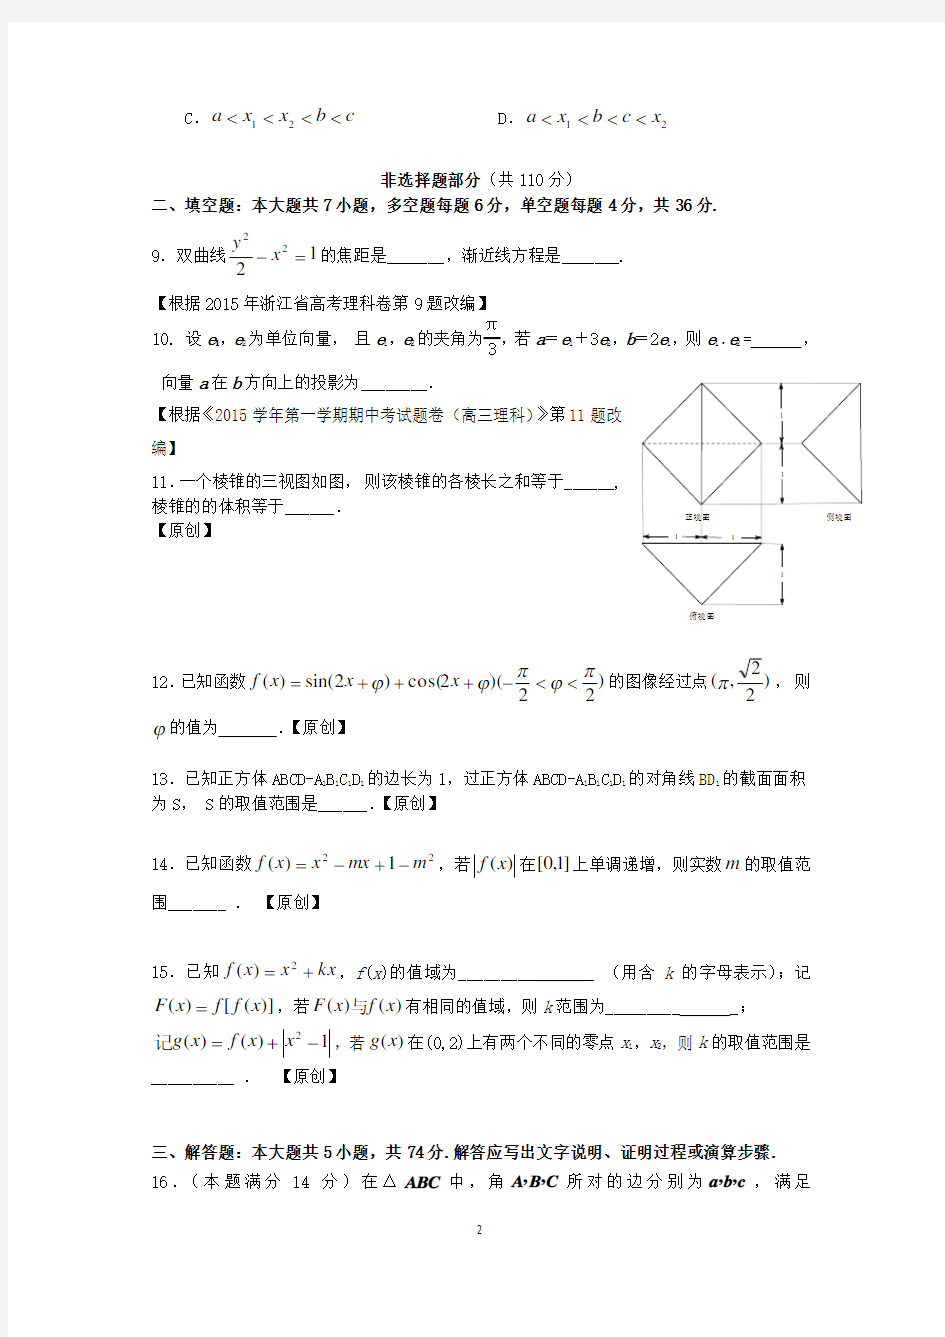 高考模拟试卷数学卷(理科01)